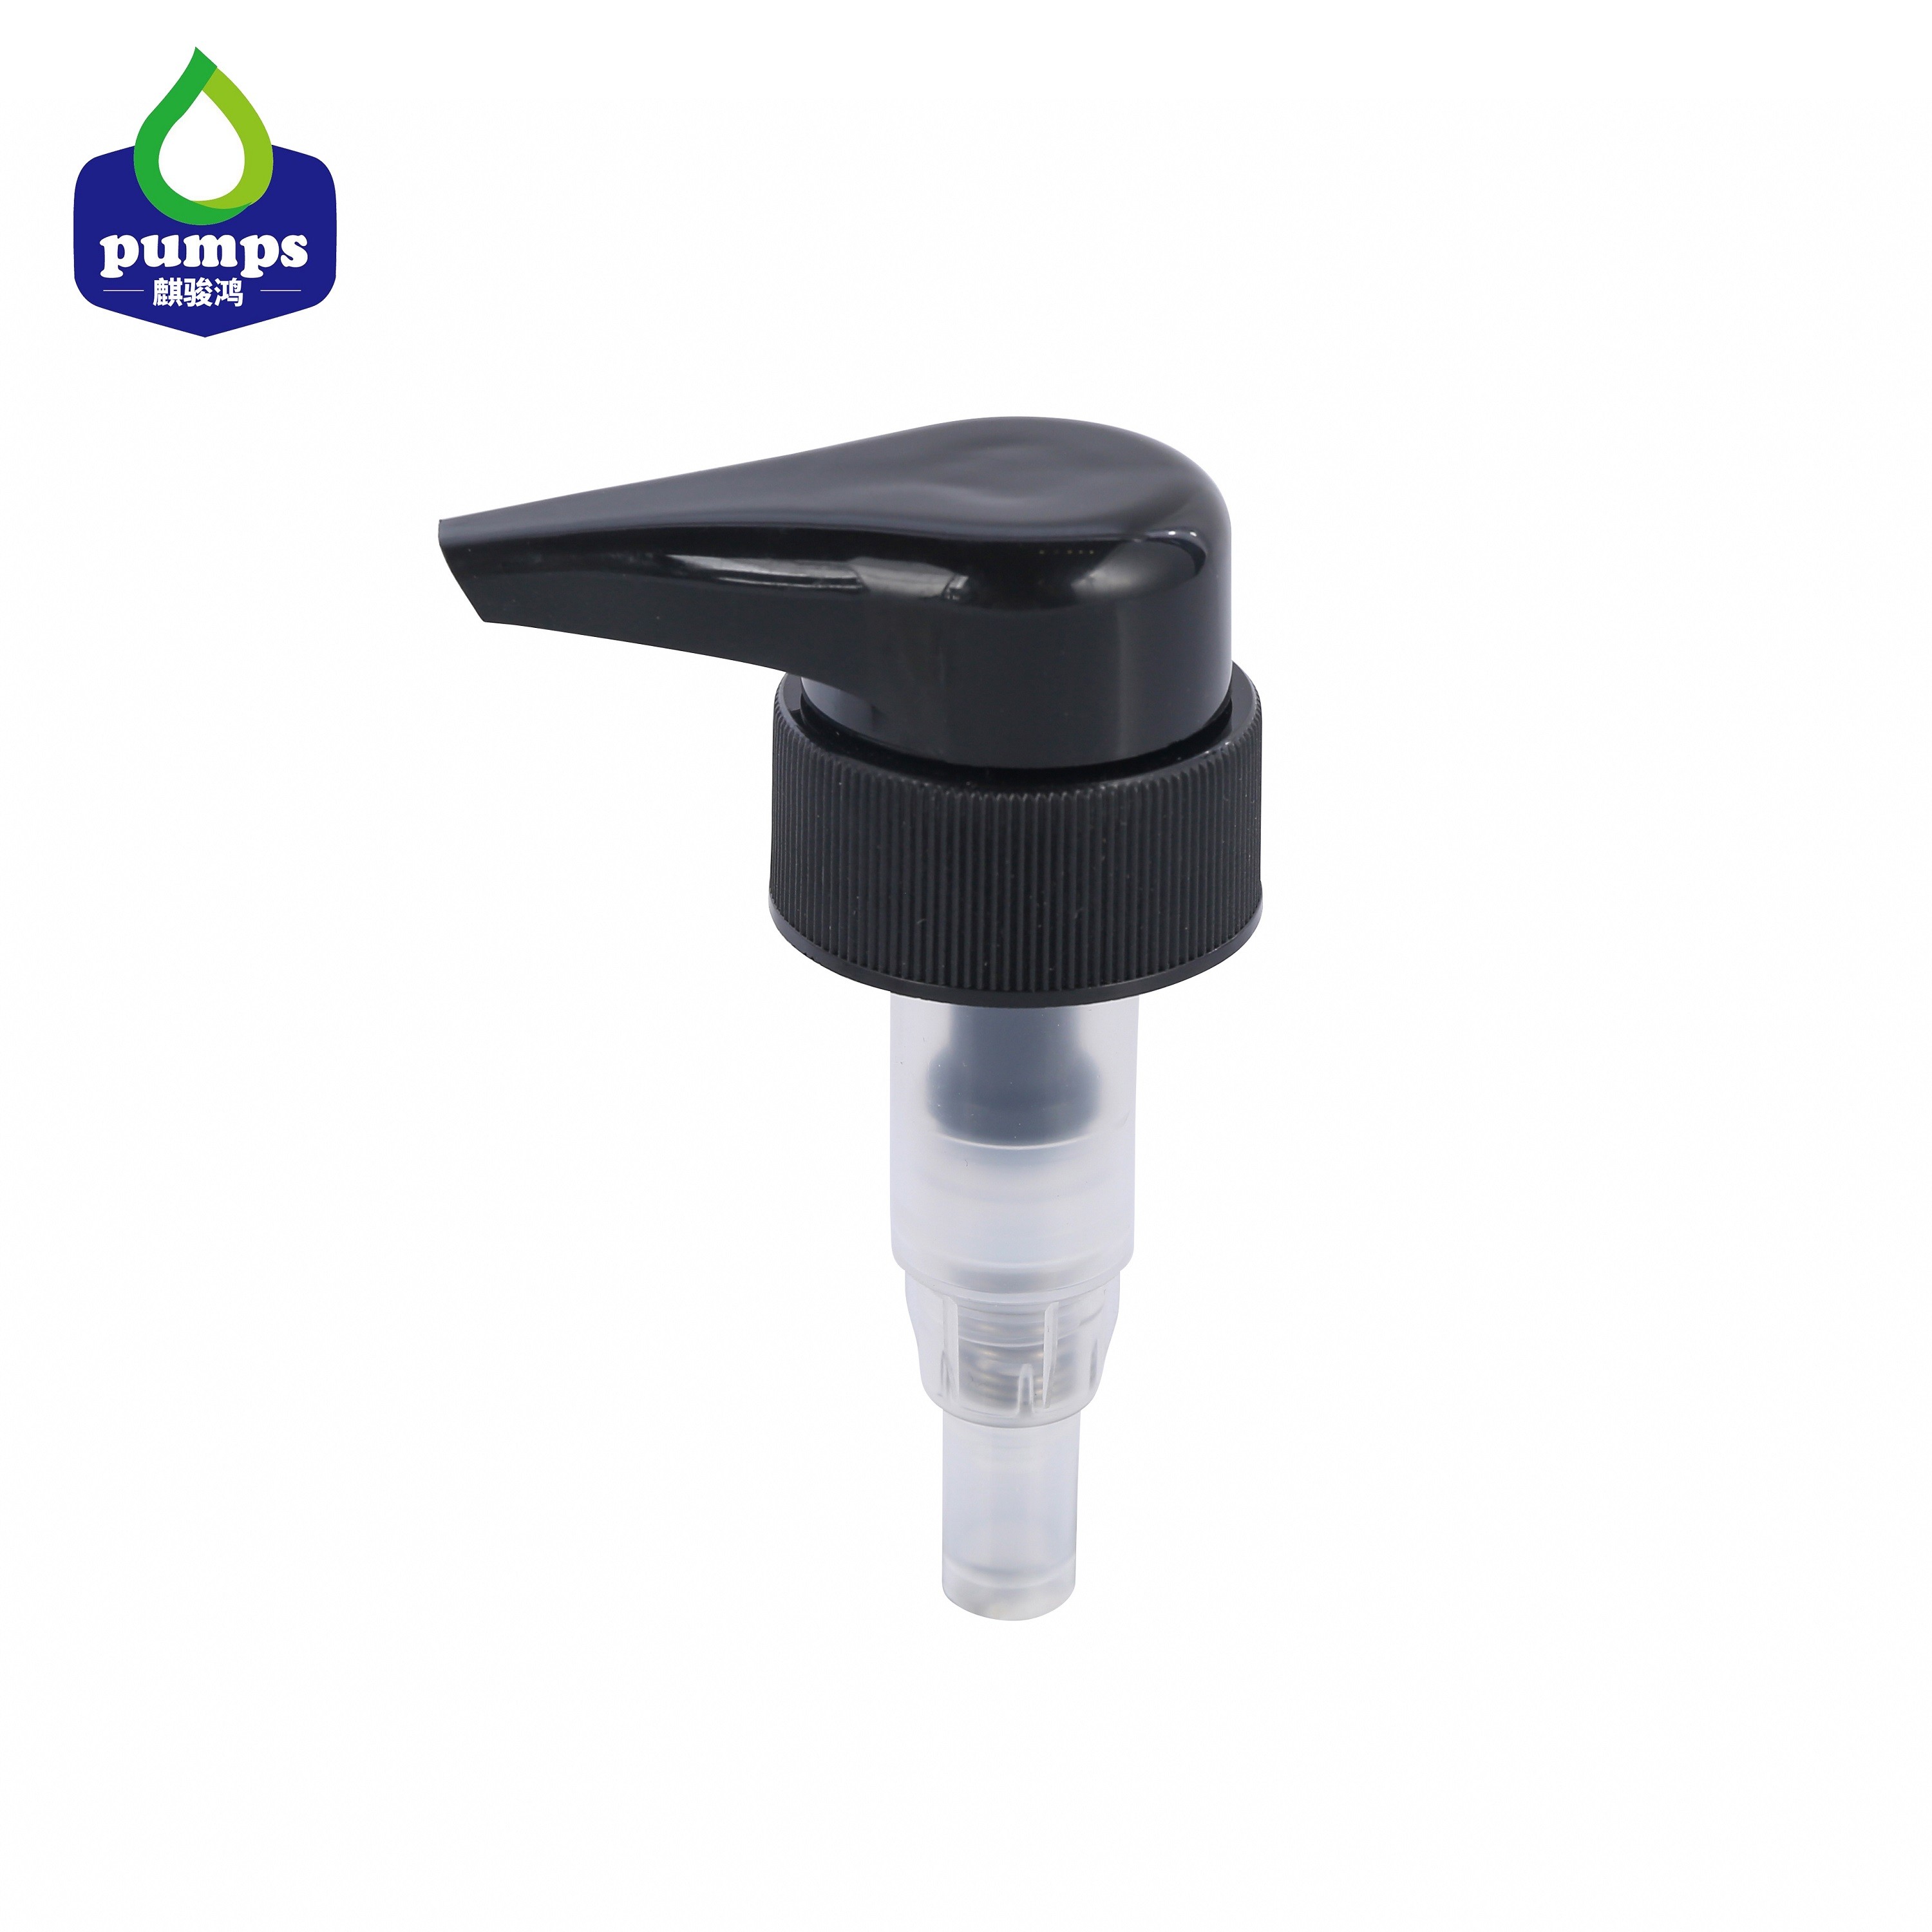 Cheap New product black color shampoo bottle dispener pump multiple size option 4cc dosage for sale